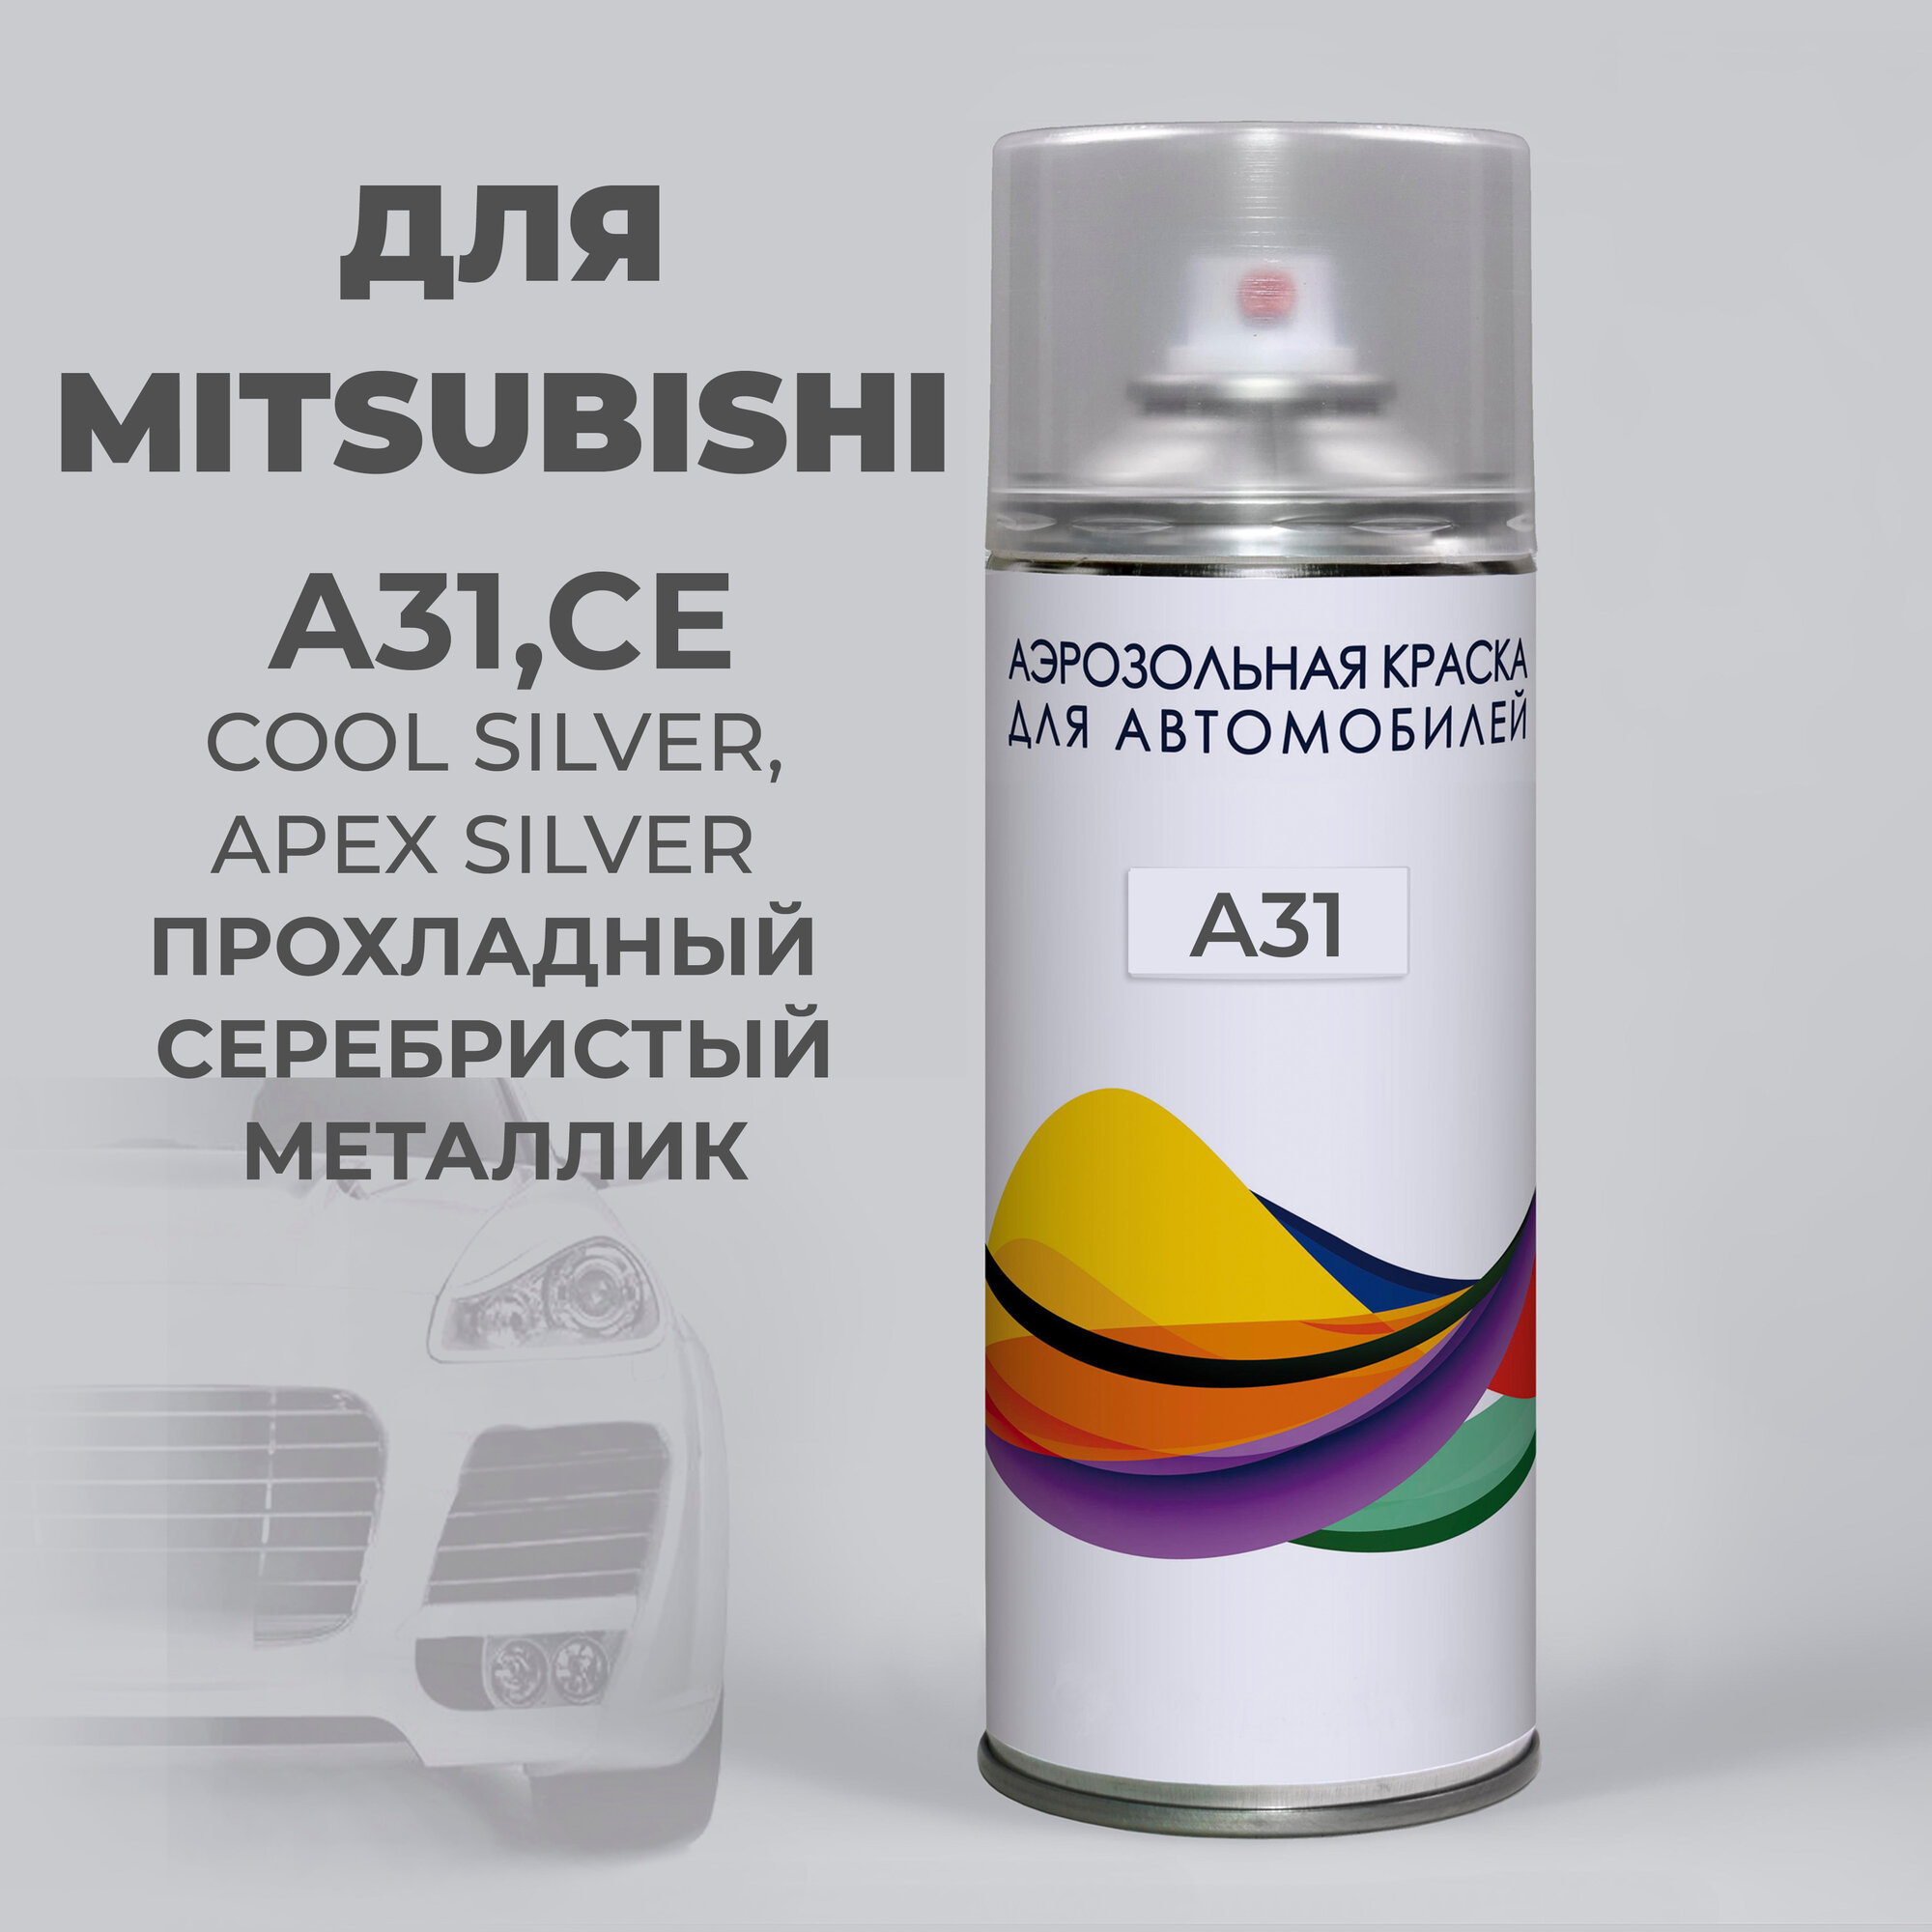 Подкраска аэрозольная для авто A31 Mitsubishi, COOL SILVER APEX, Прохладный серебристый металлик. 400 мл